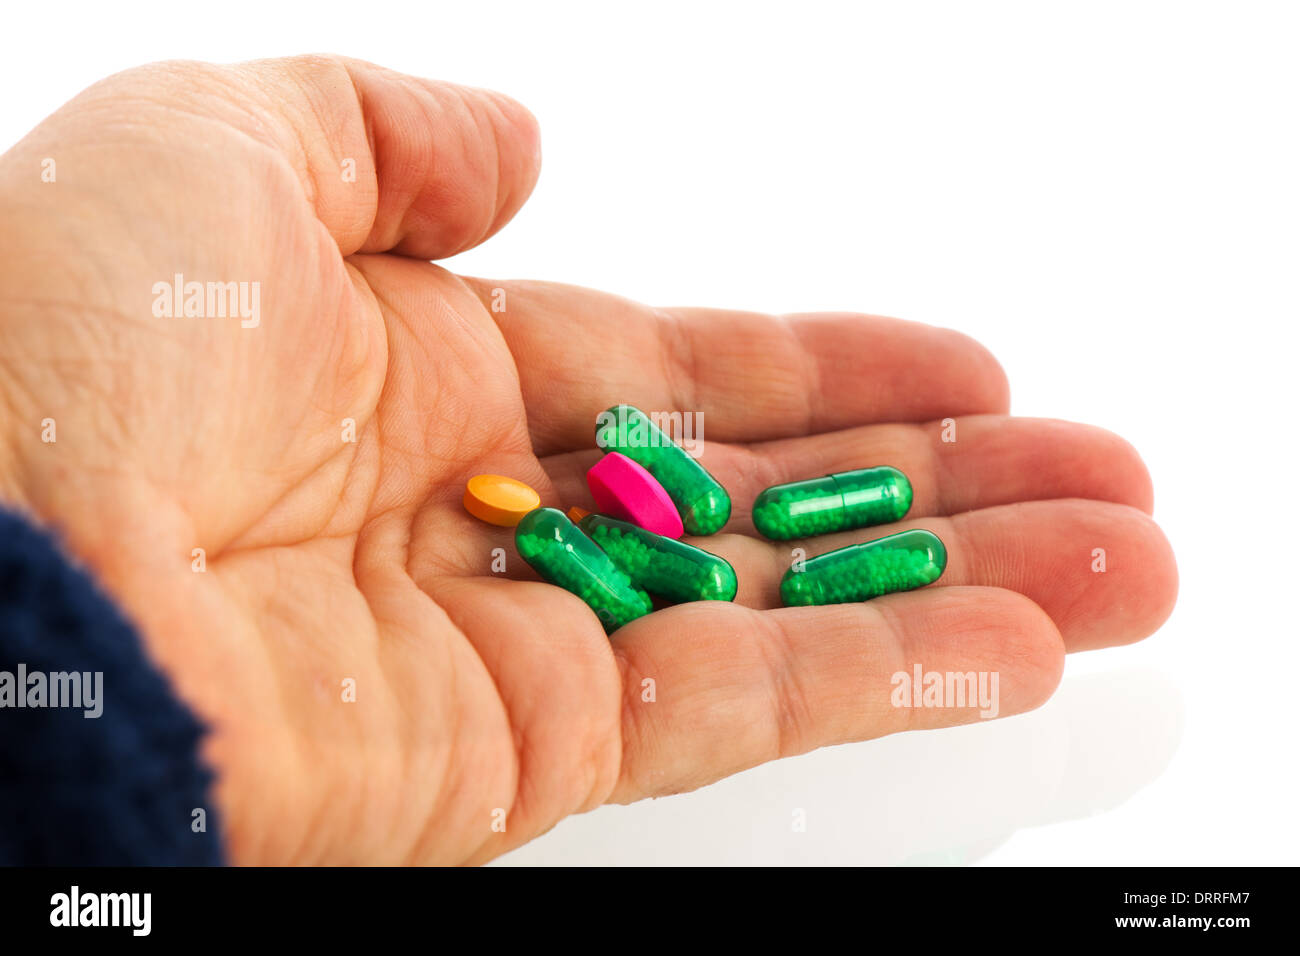 La main avec la médecine ancienne vert en capsules isolated over white background Banque D'Images